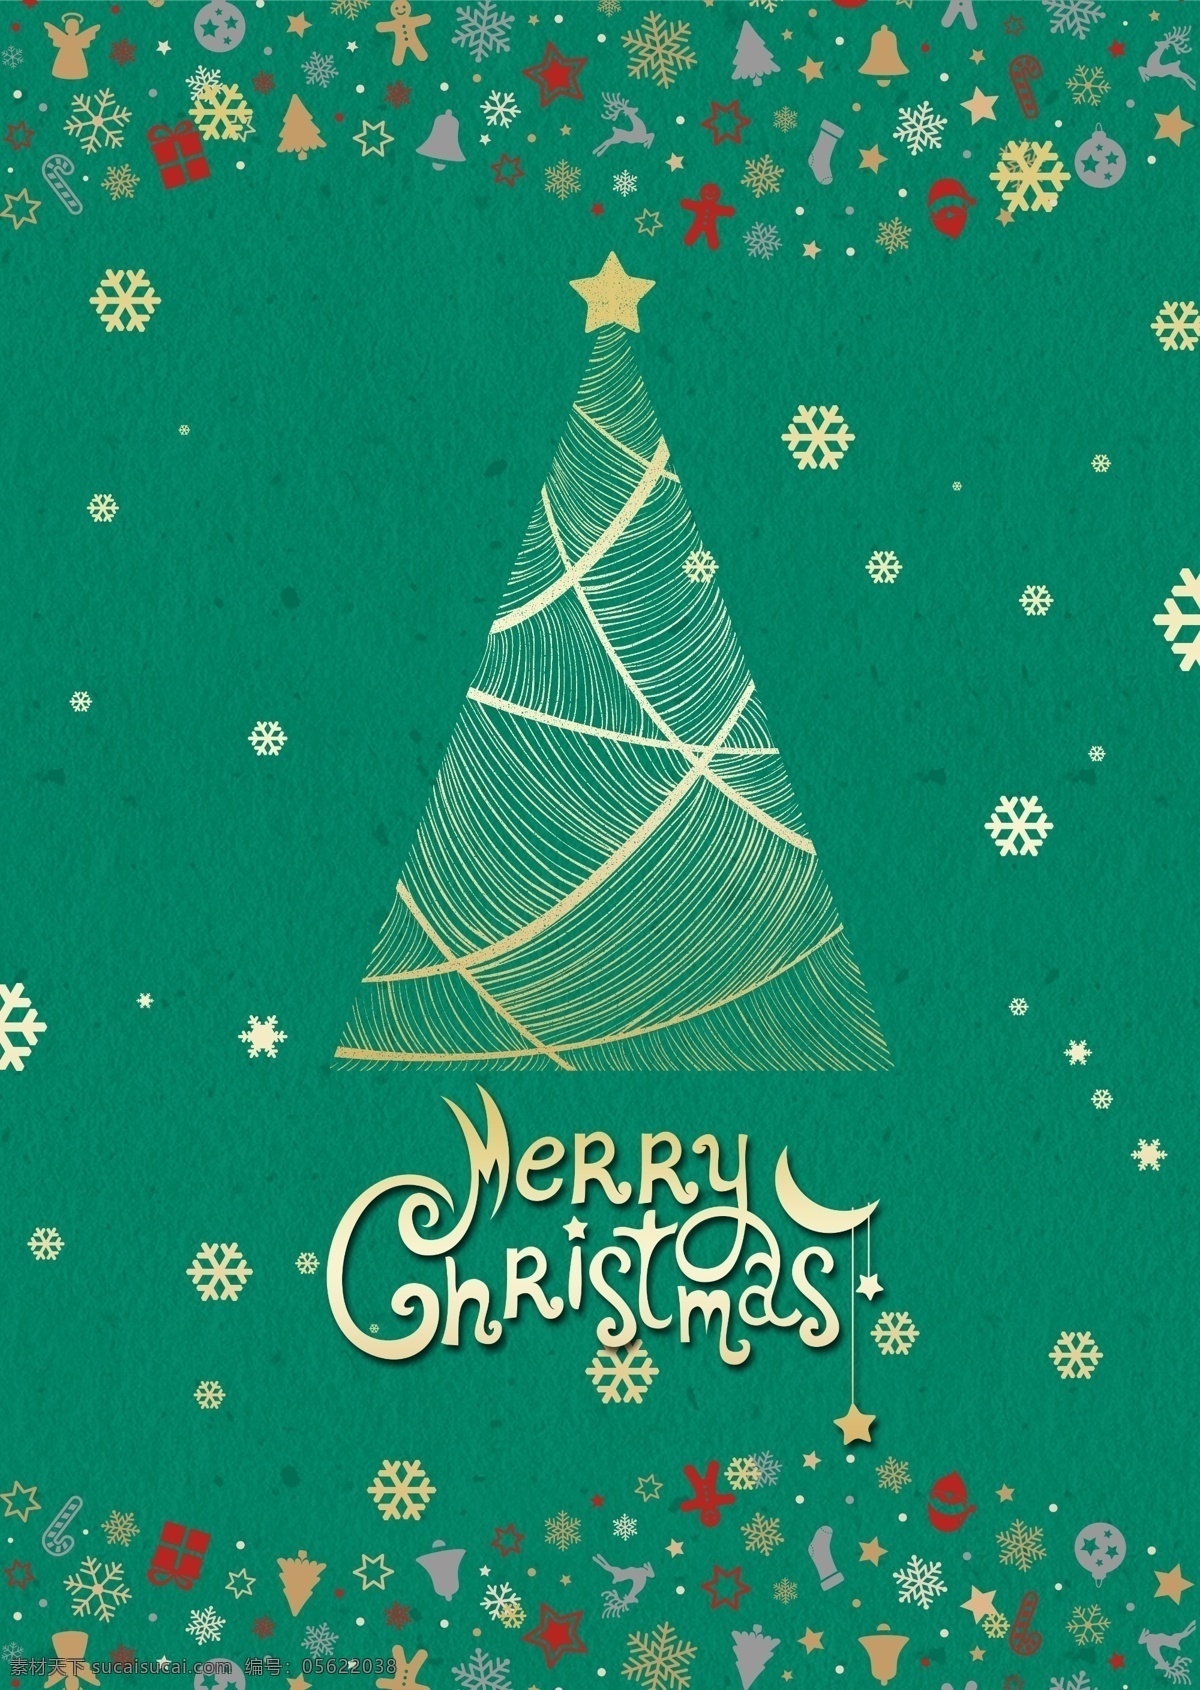 关于 2018 年 绿色 圣诞节 海报 肝 药 雪 鹿 圣诞老人 礼品盒 五角星 天使 圣诞 钟声 圣诞树 模板 时尚 飞机 姜饼 螨